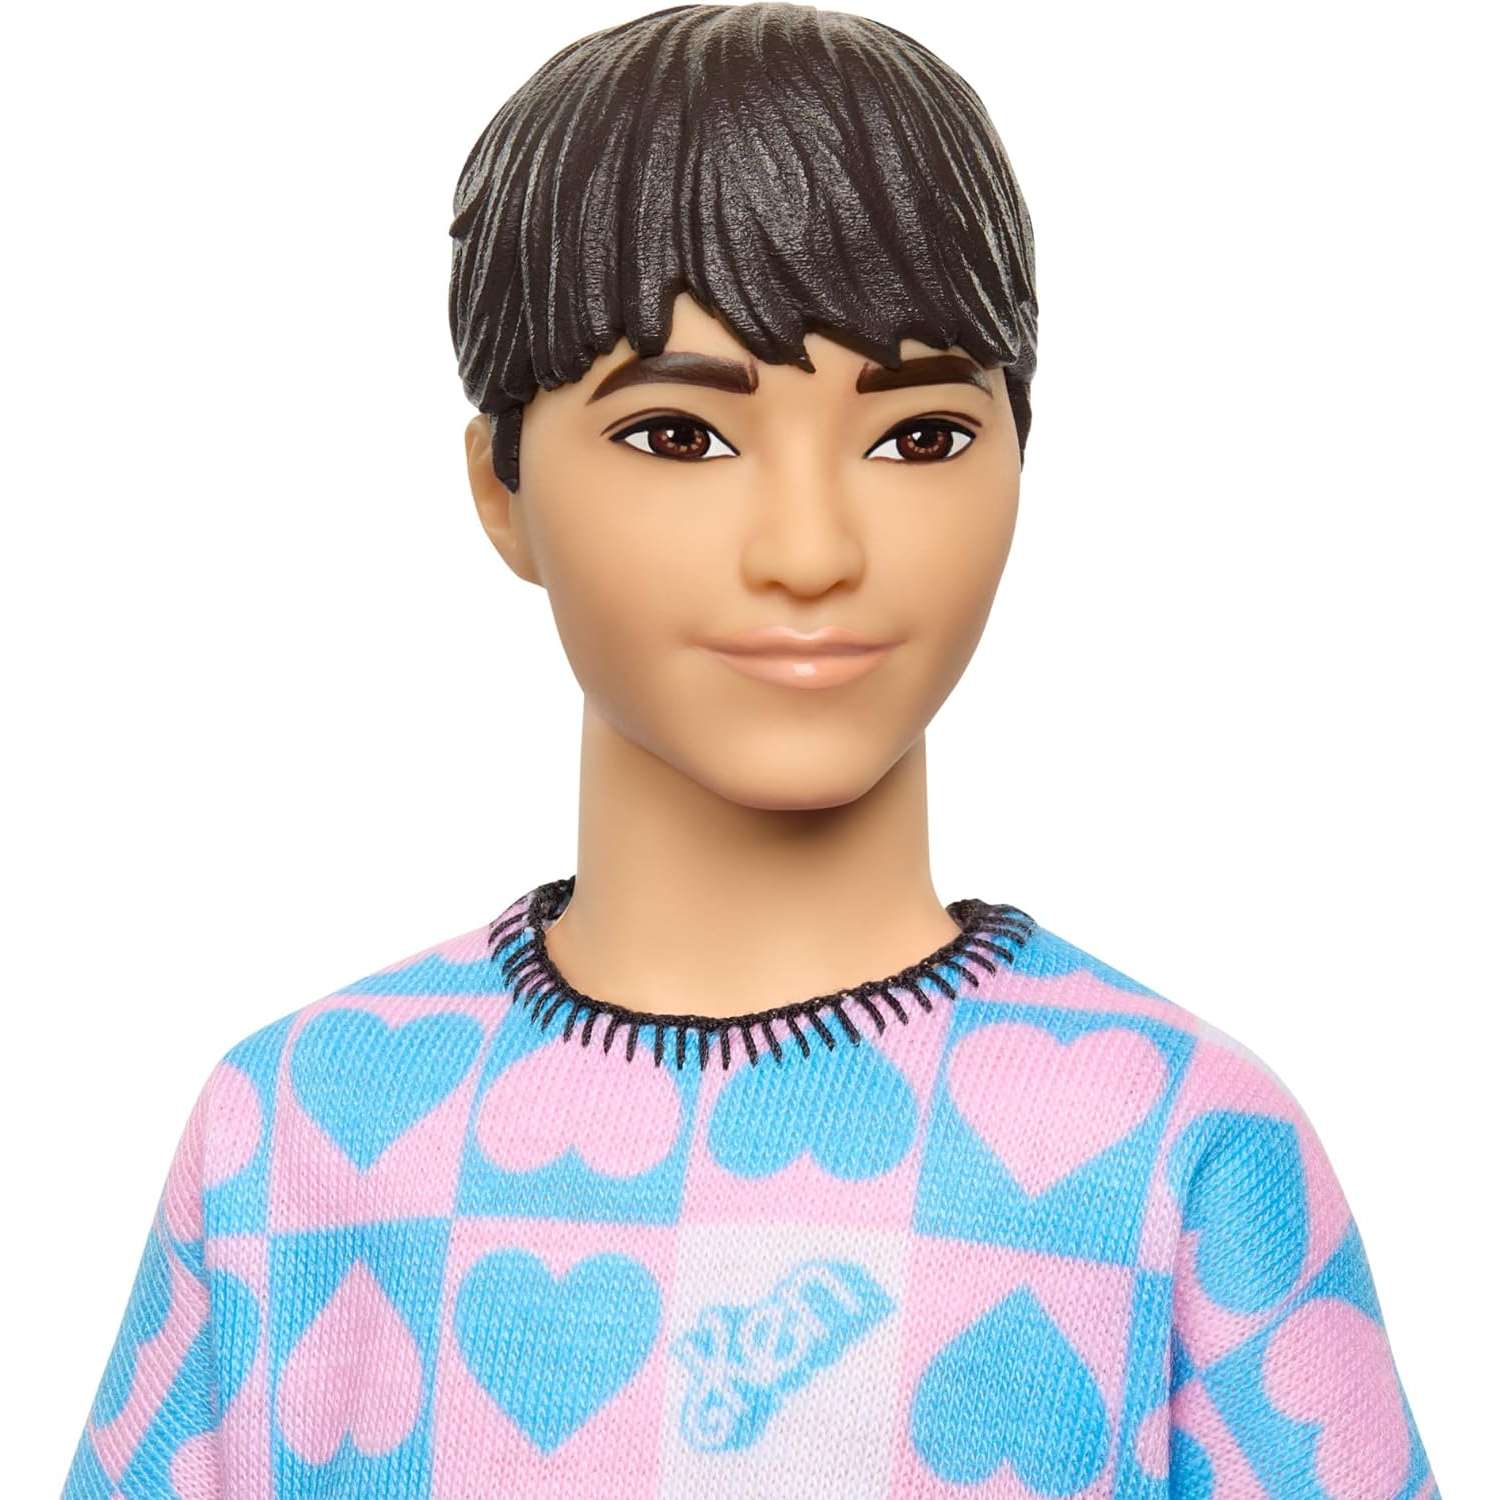 Кукла Barbie Fashionista Ken голубой и розовый свитер HRH24 HRH24 - фото 3